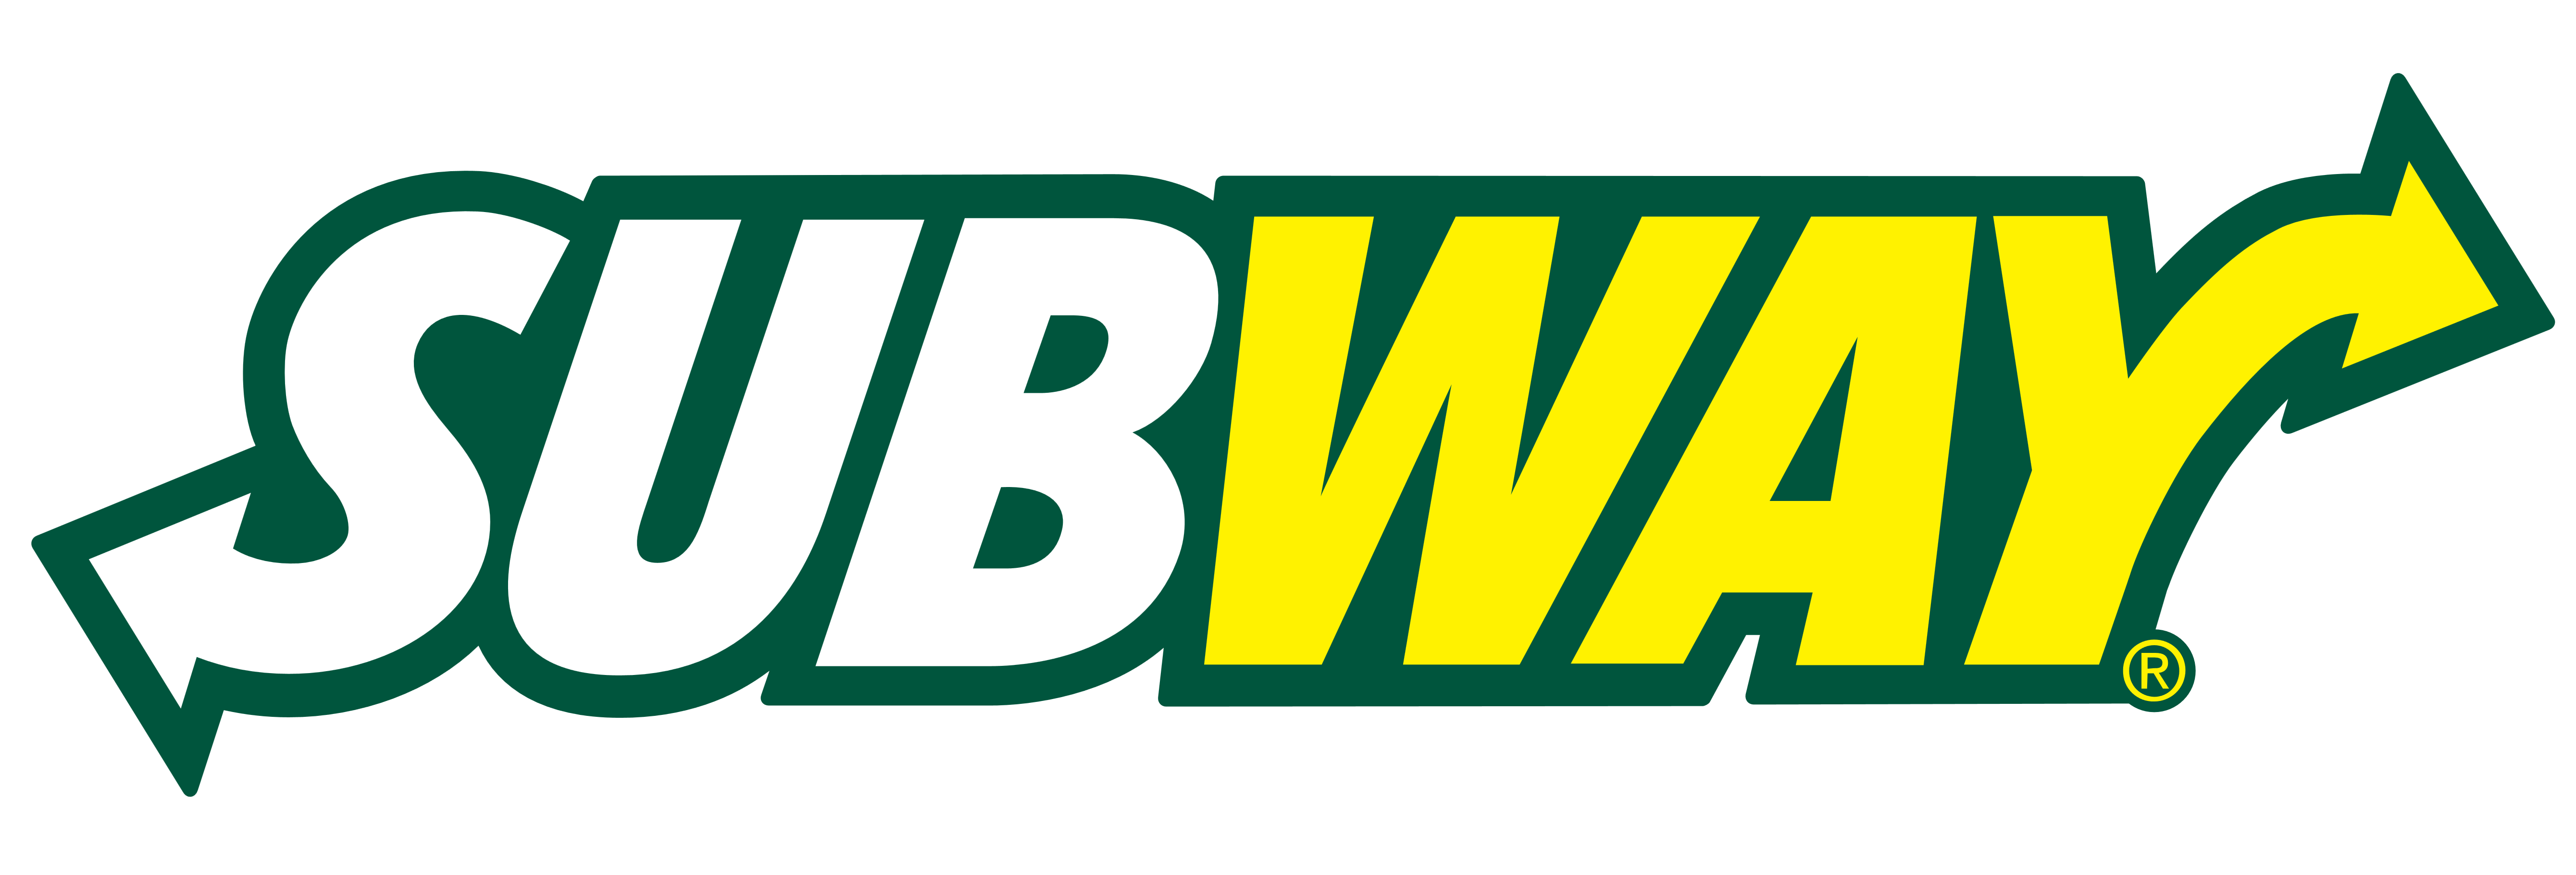 Subway logo, logotype